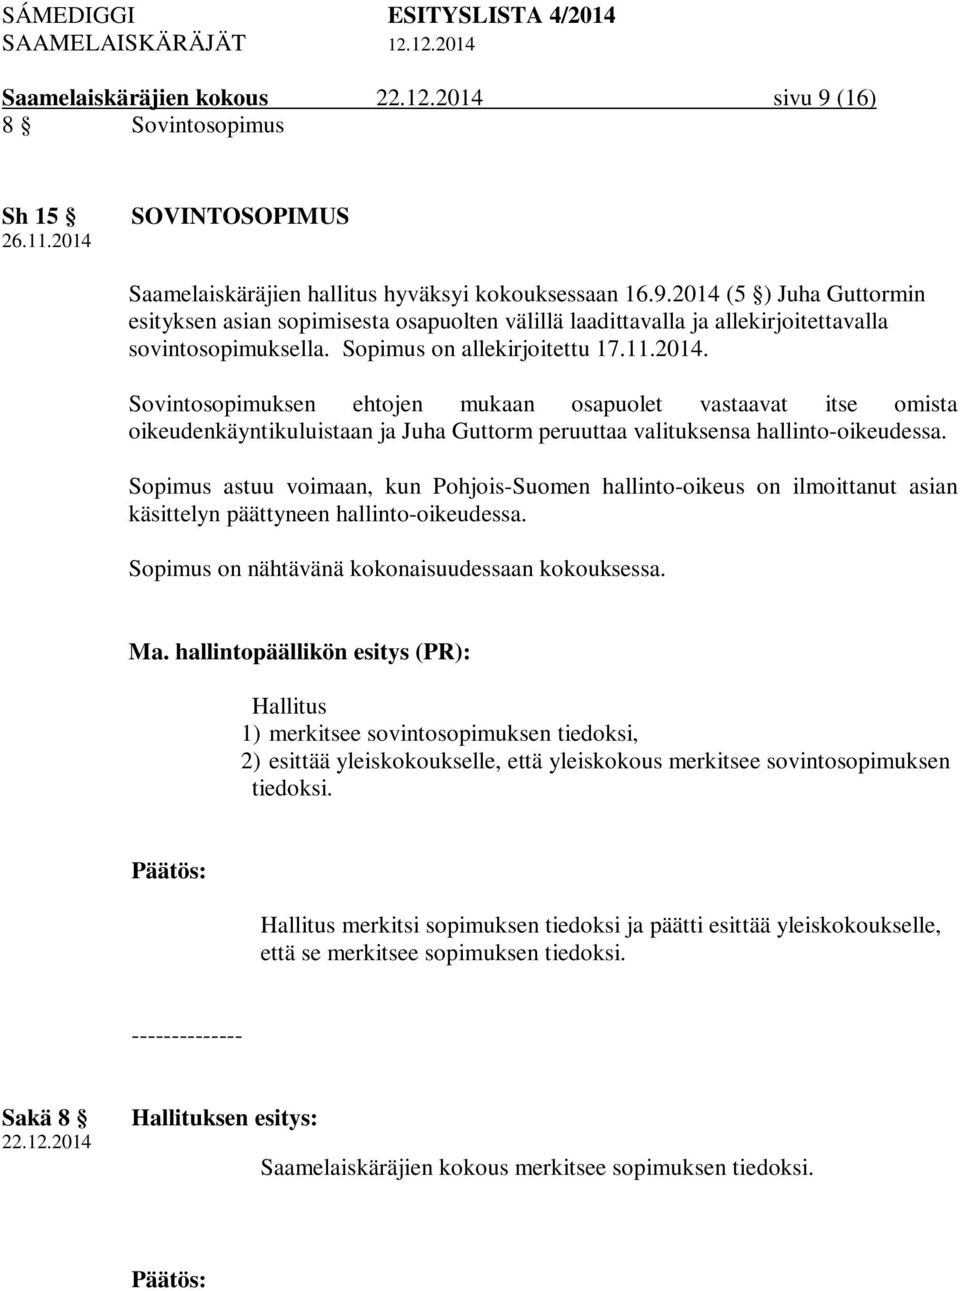 Sopimus astuu voimaan, kun Pohjois-Suomen hallinto-oikeus on ilmoittanut asian käsittelyn päättyneen hallinto-oikeudessa. Sopimus on nähtävänä kokonaisuudessaan kokouksessa. Ma.